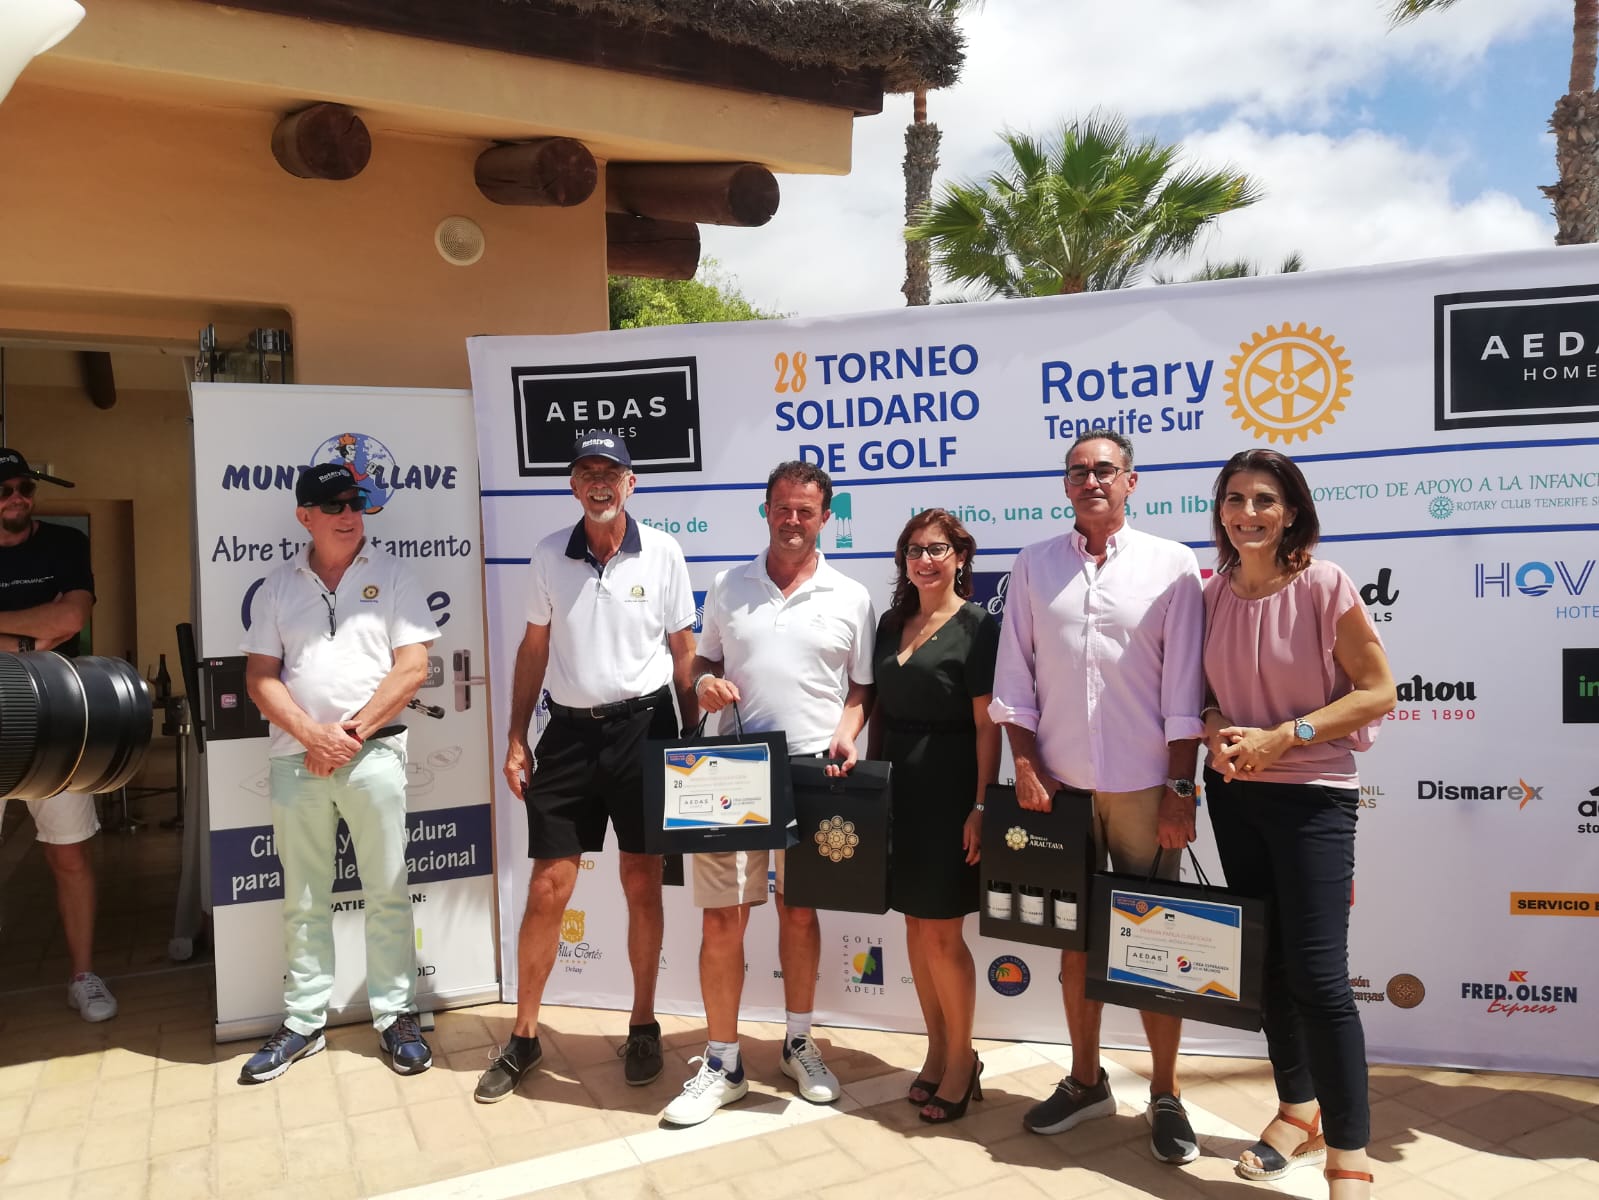 Gran éxito de participación en el 28 Torneo Solidario AEDAS Rotary Tenerife Sur